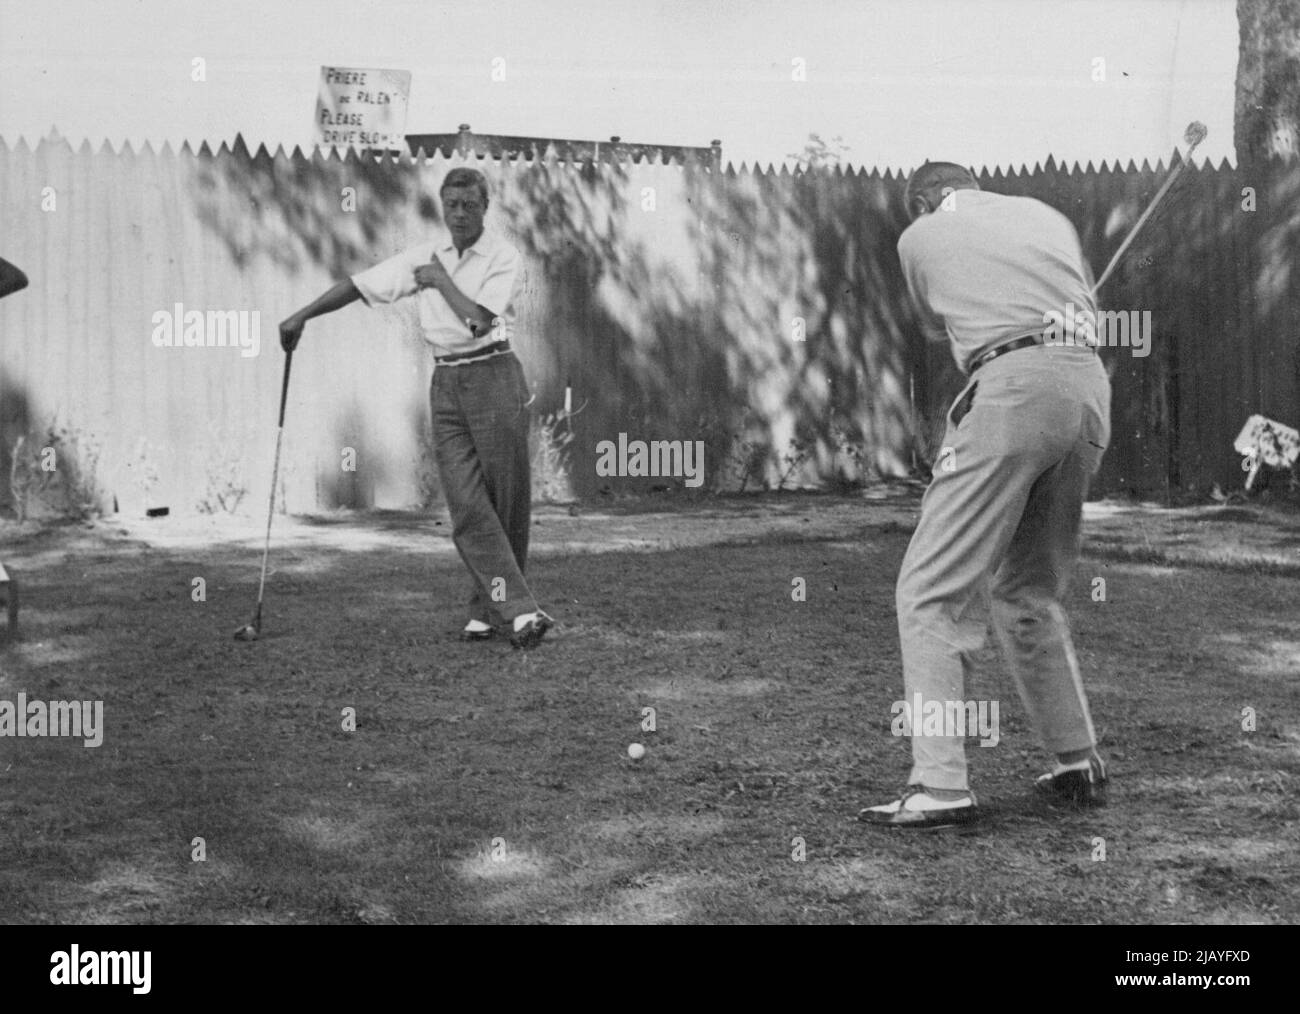 Le duc de Windsor joue au tournoi de golf de Nice, mais l'avis ne s'applique pas: Le duc de Windsor (à gauche) regarde un autre joueur en voiture pendant le tournoi à Nice hier, 31 juillet. Mais aucun des deux n'a fait l'avis (arrière gauche) s'appliquent au golf, nous l'espérons). Le duc de Windsor, qui est resté avec la duchesse à Cannes, est en compétition dans le tournoi annuel de golf de la coupe magnolia Challenge à Nice. 13 août 1939. (Photo par photo de presse associée). Banque D'Images